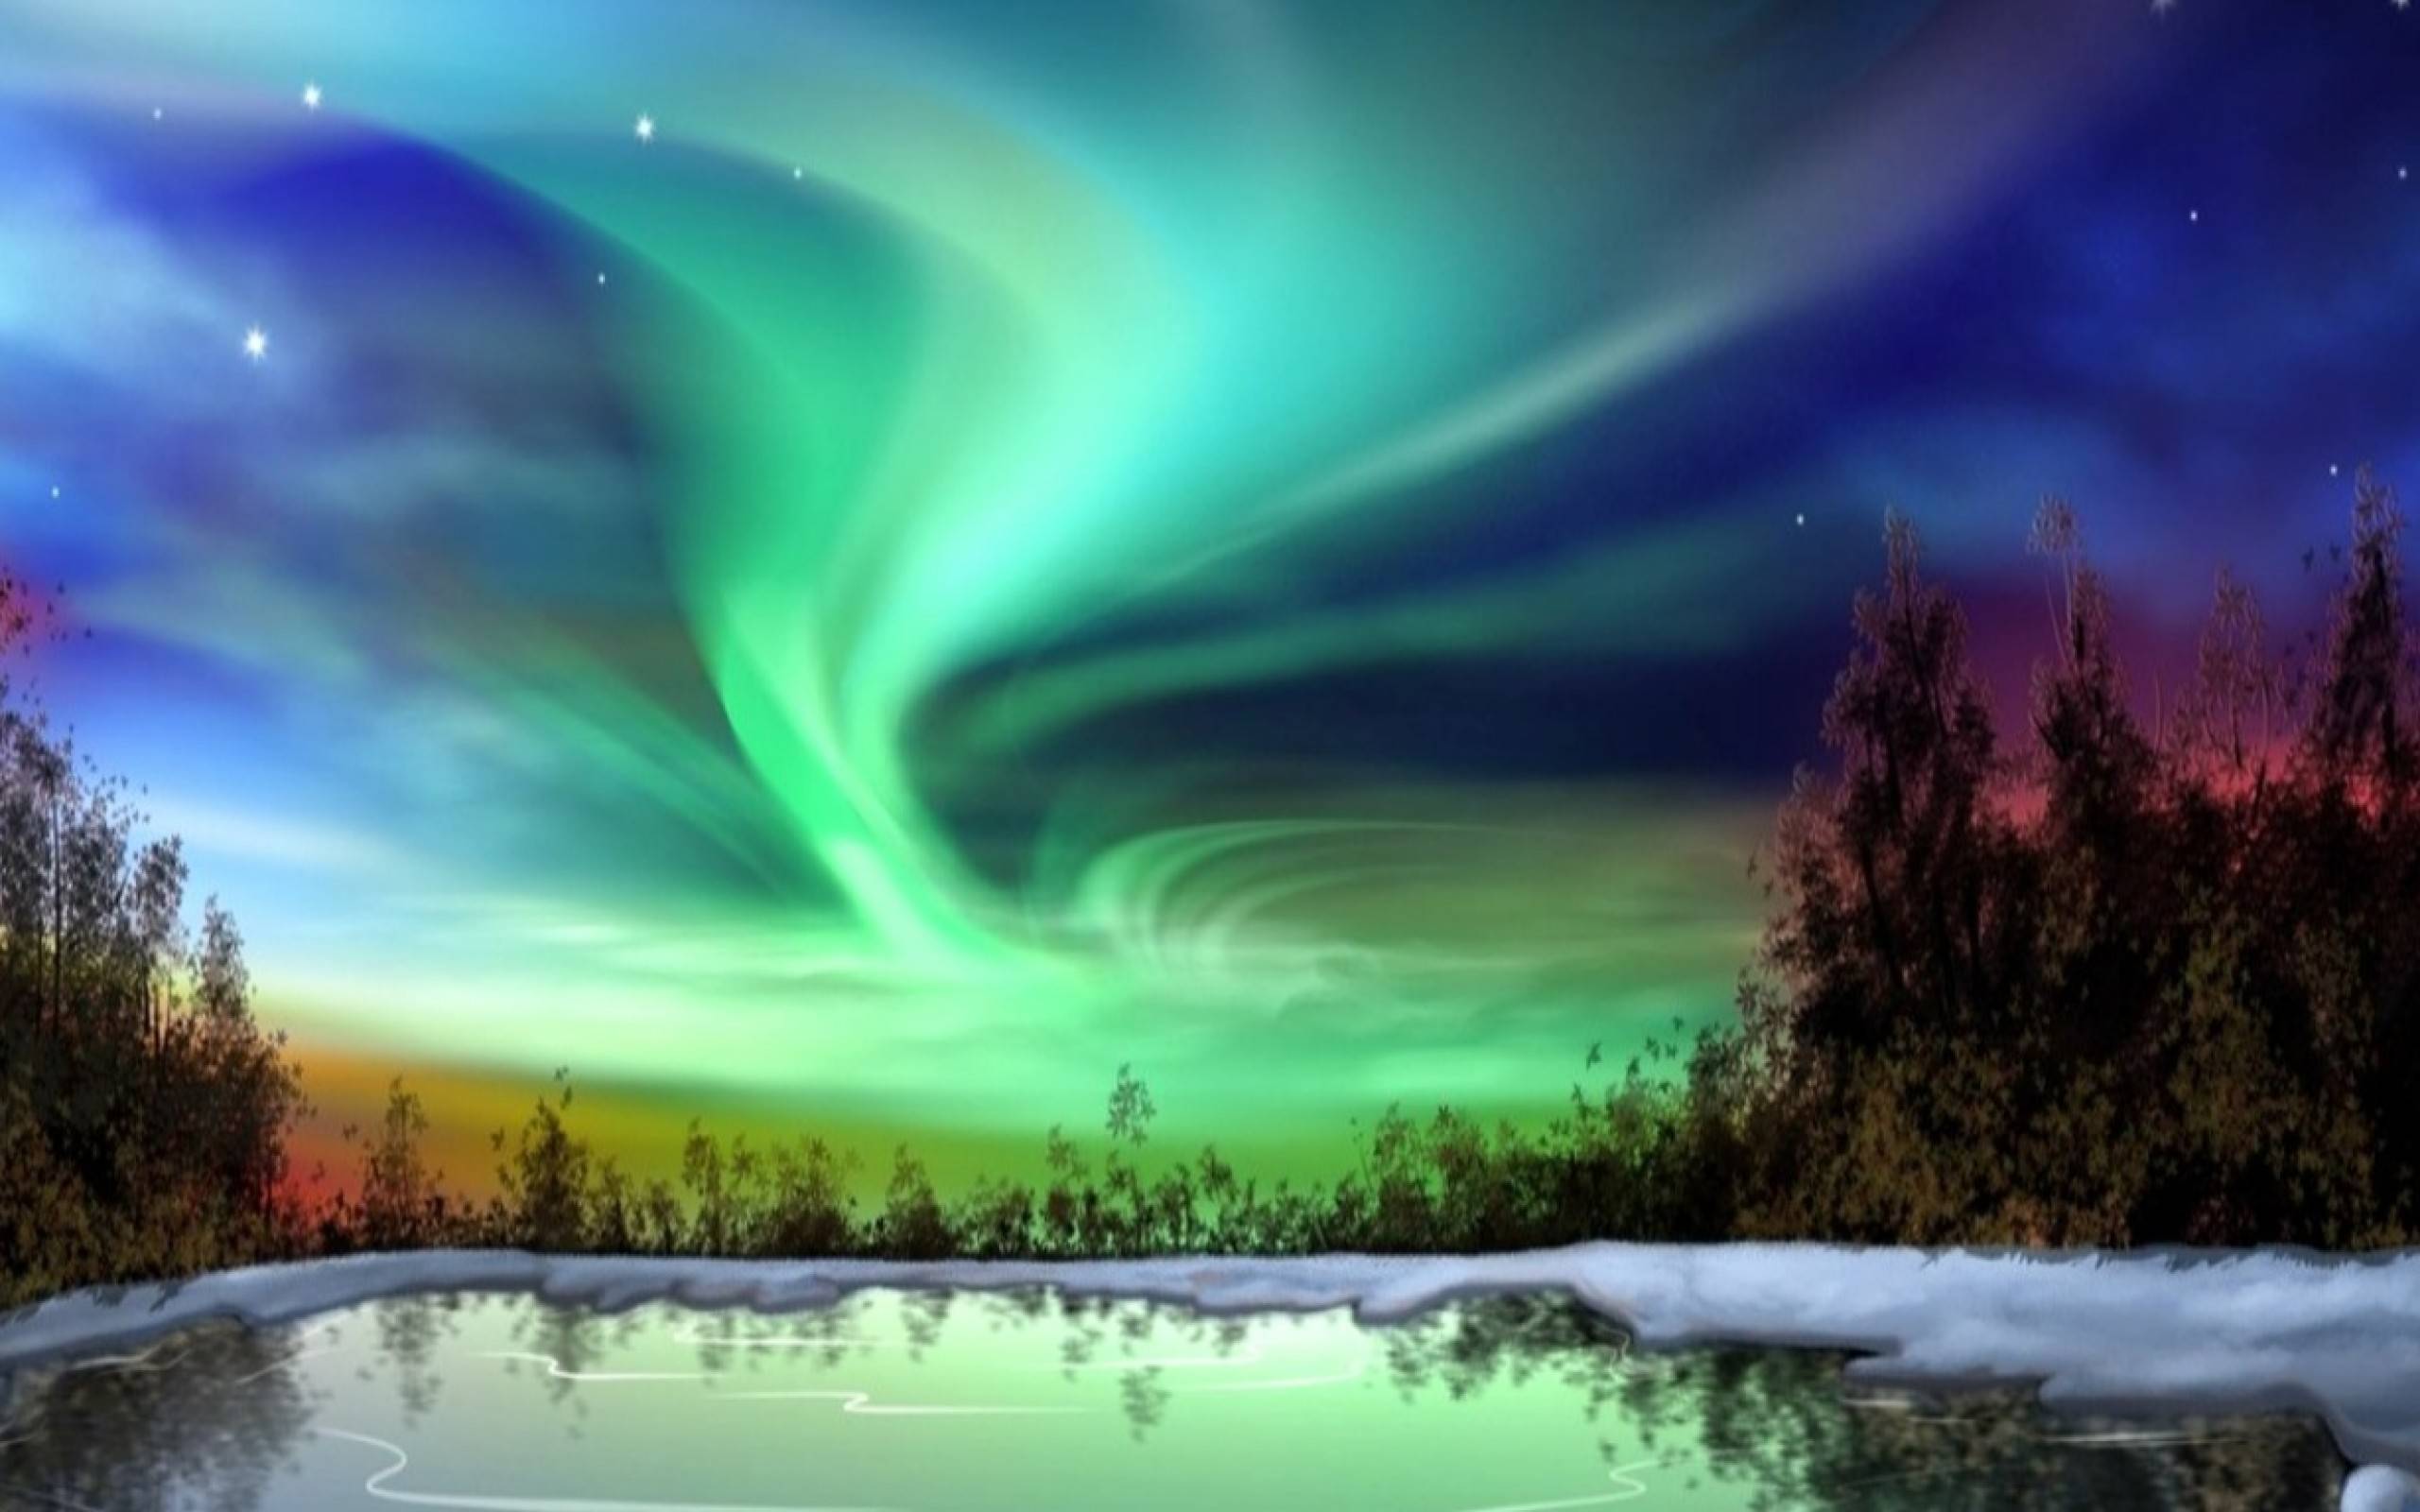 [50+] Aurora Borealis Wallpaper Screensavers - WallpaperSafari